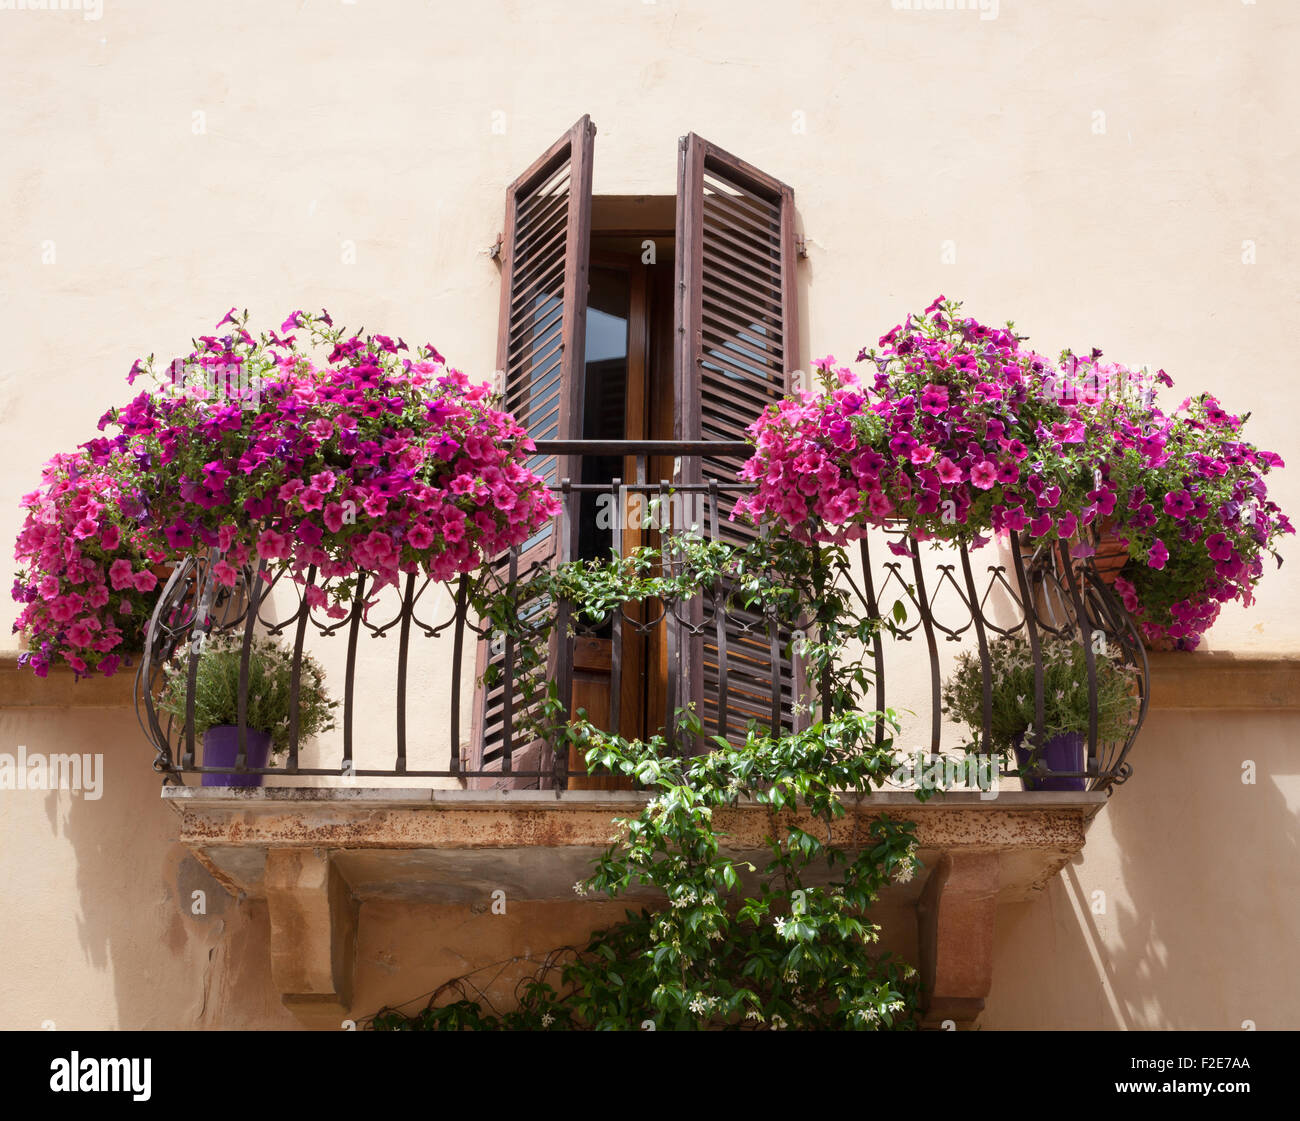 Flowers on a balcony in Pienza Tuscany, Italy. Stock Photo